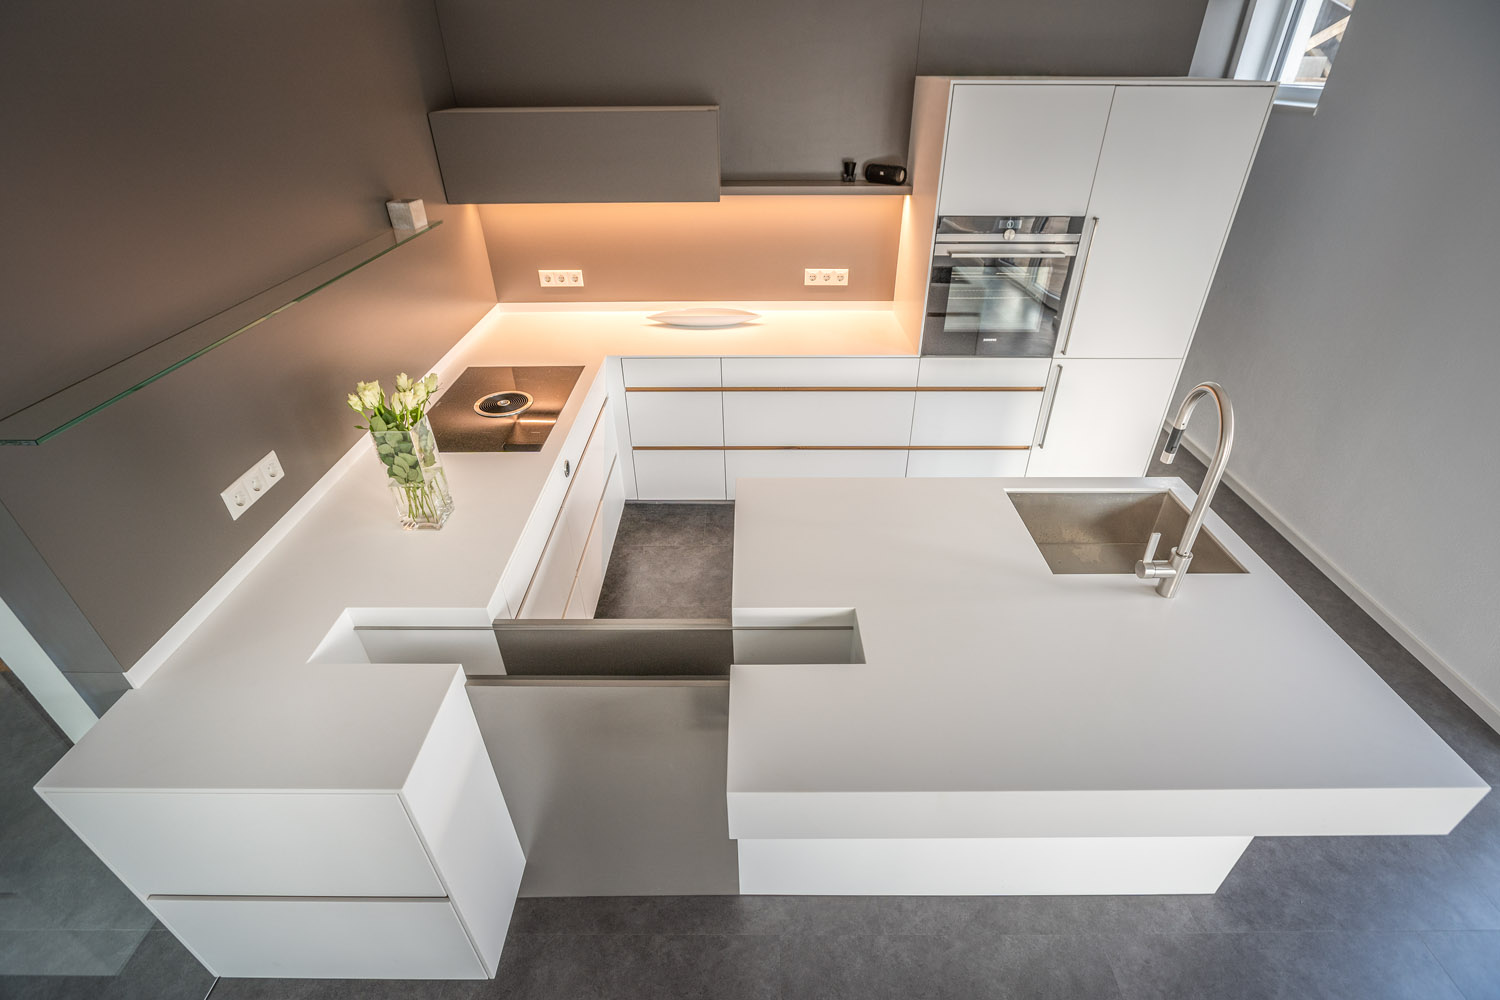 plan 3 kuchyně / Architektova kuchyně Dipl. Norbert Krähling / Kompaktní kuchyně s ostrůvkem